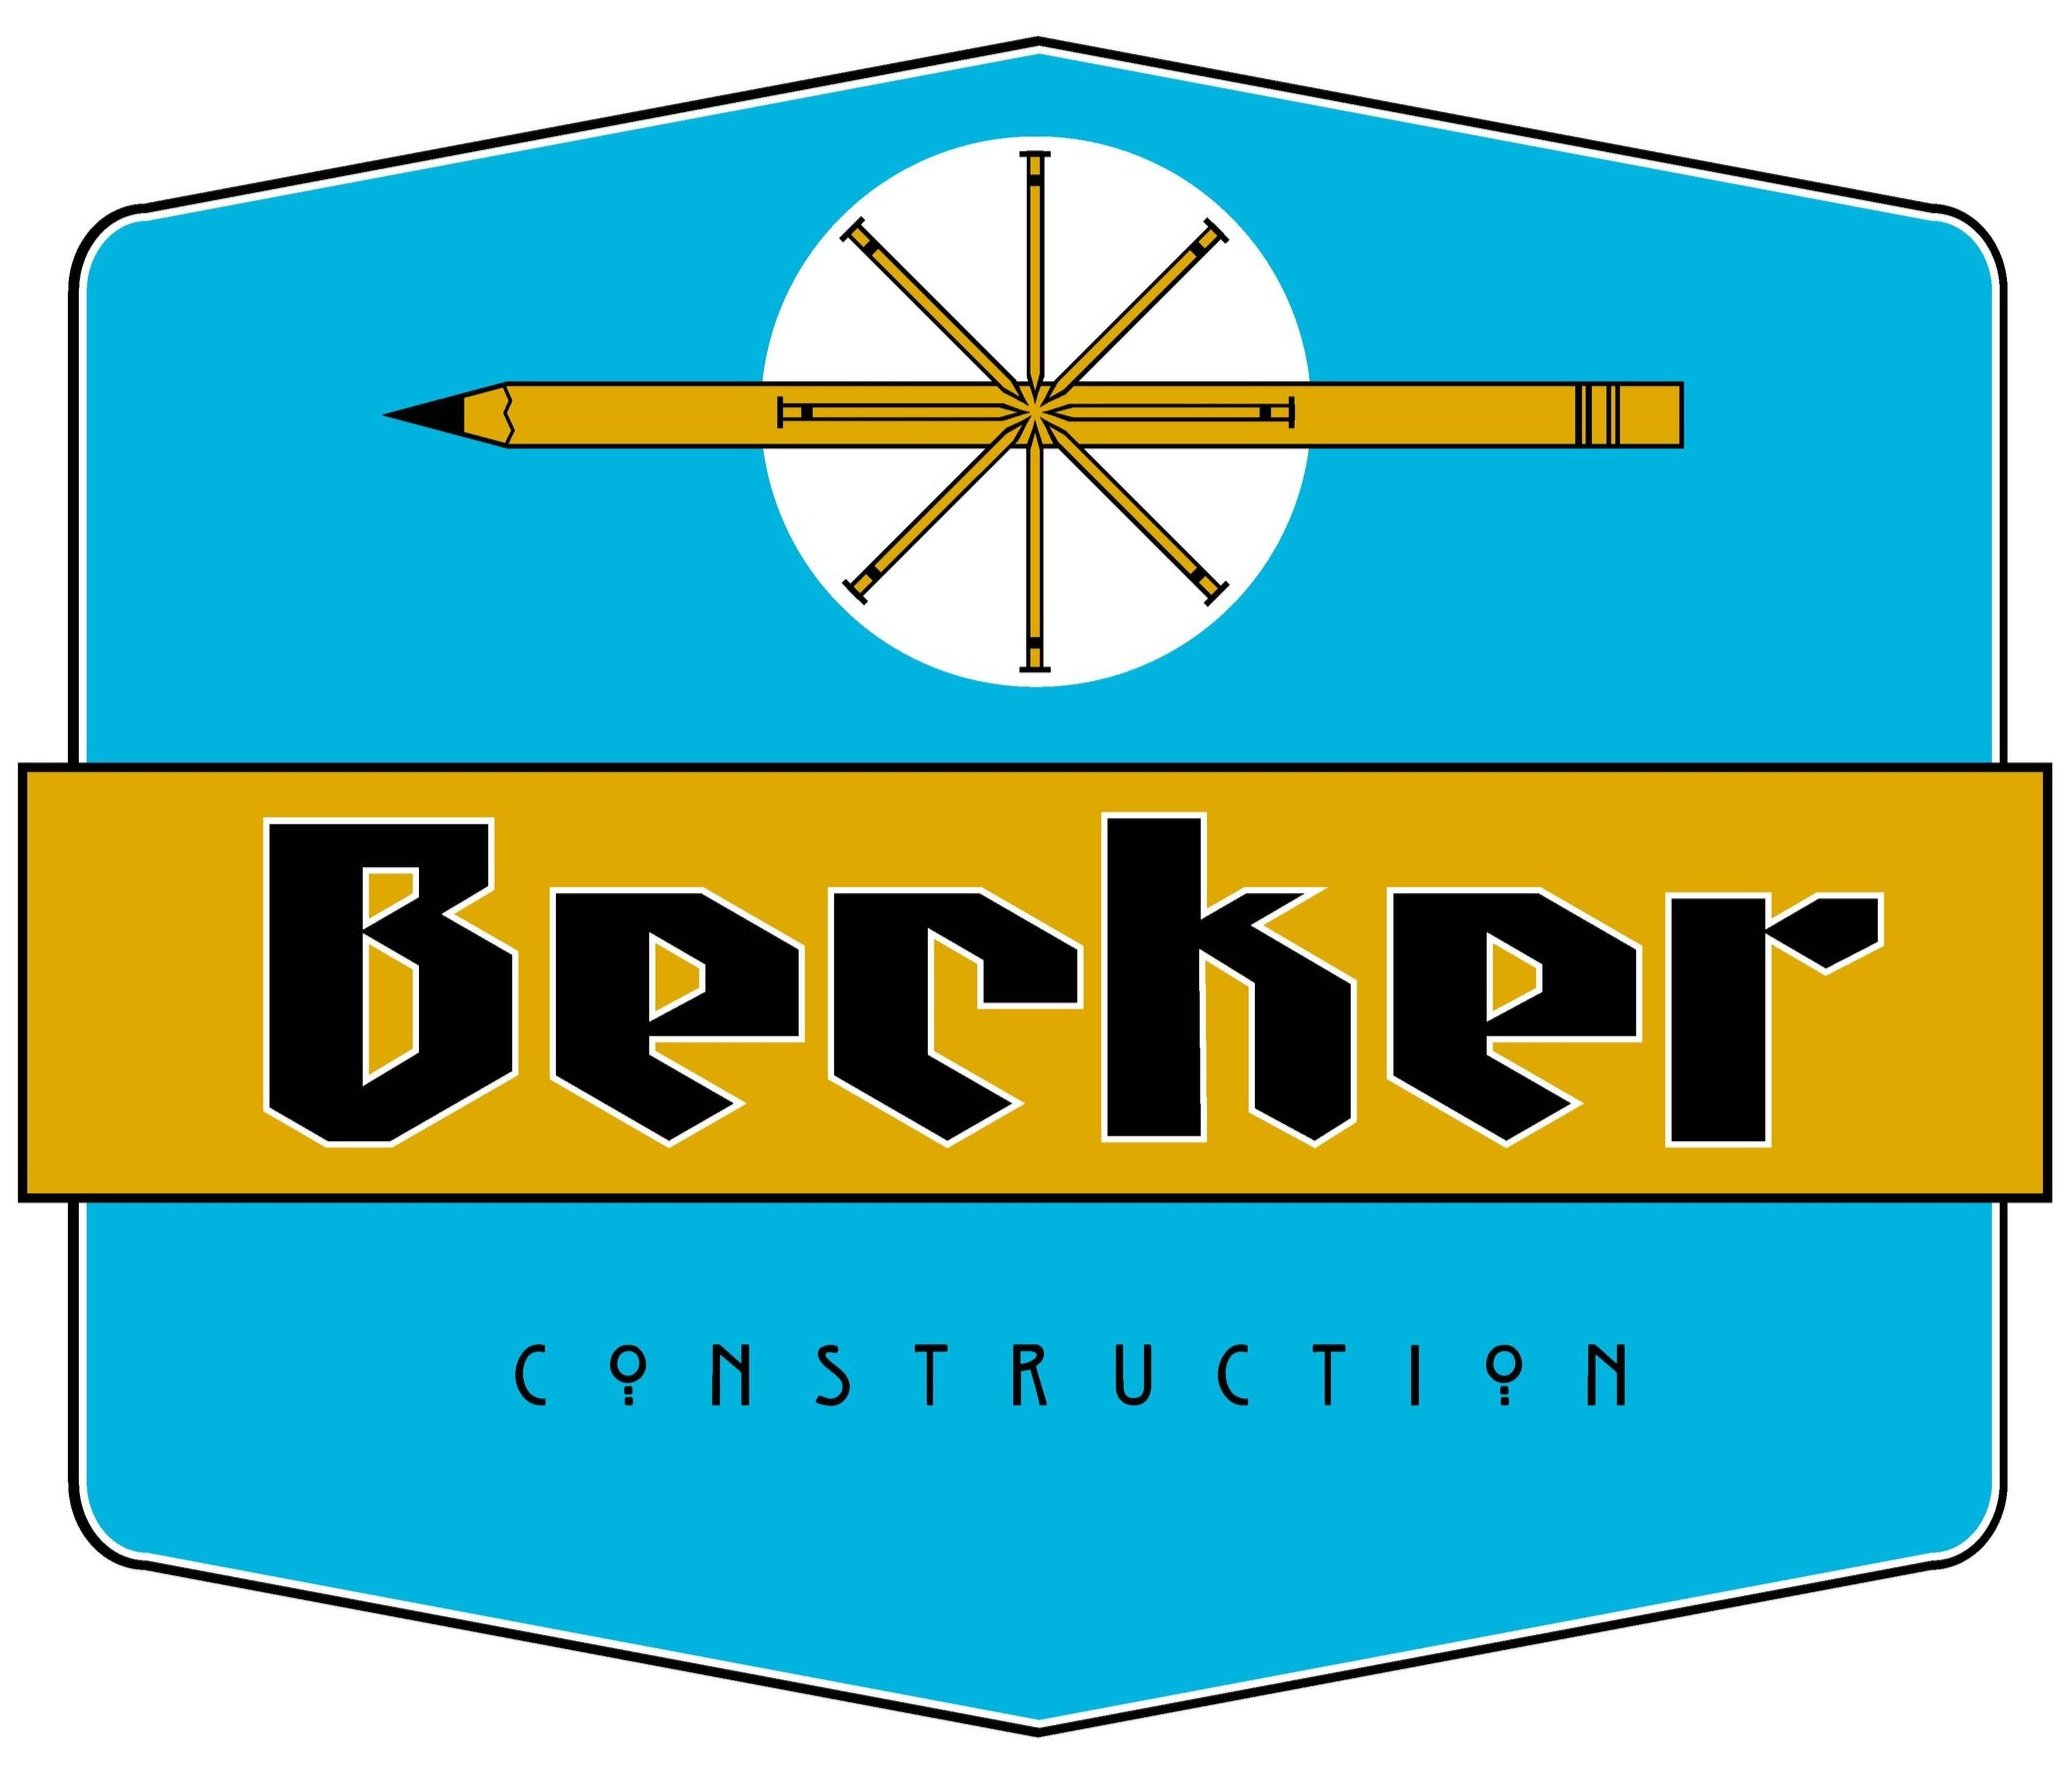 Becker Construction